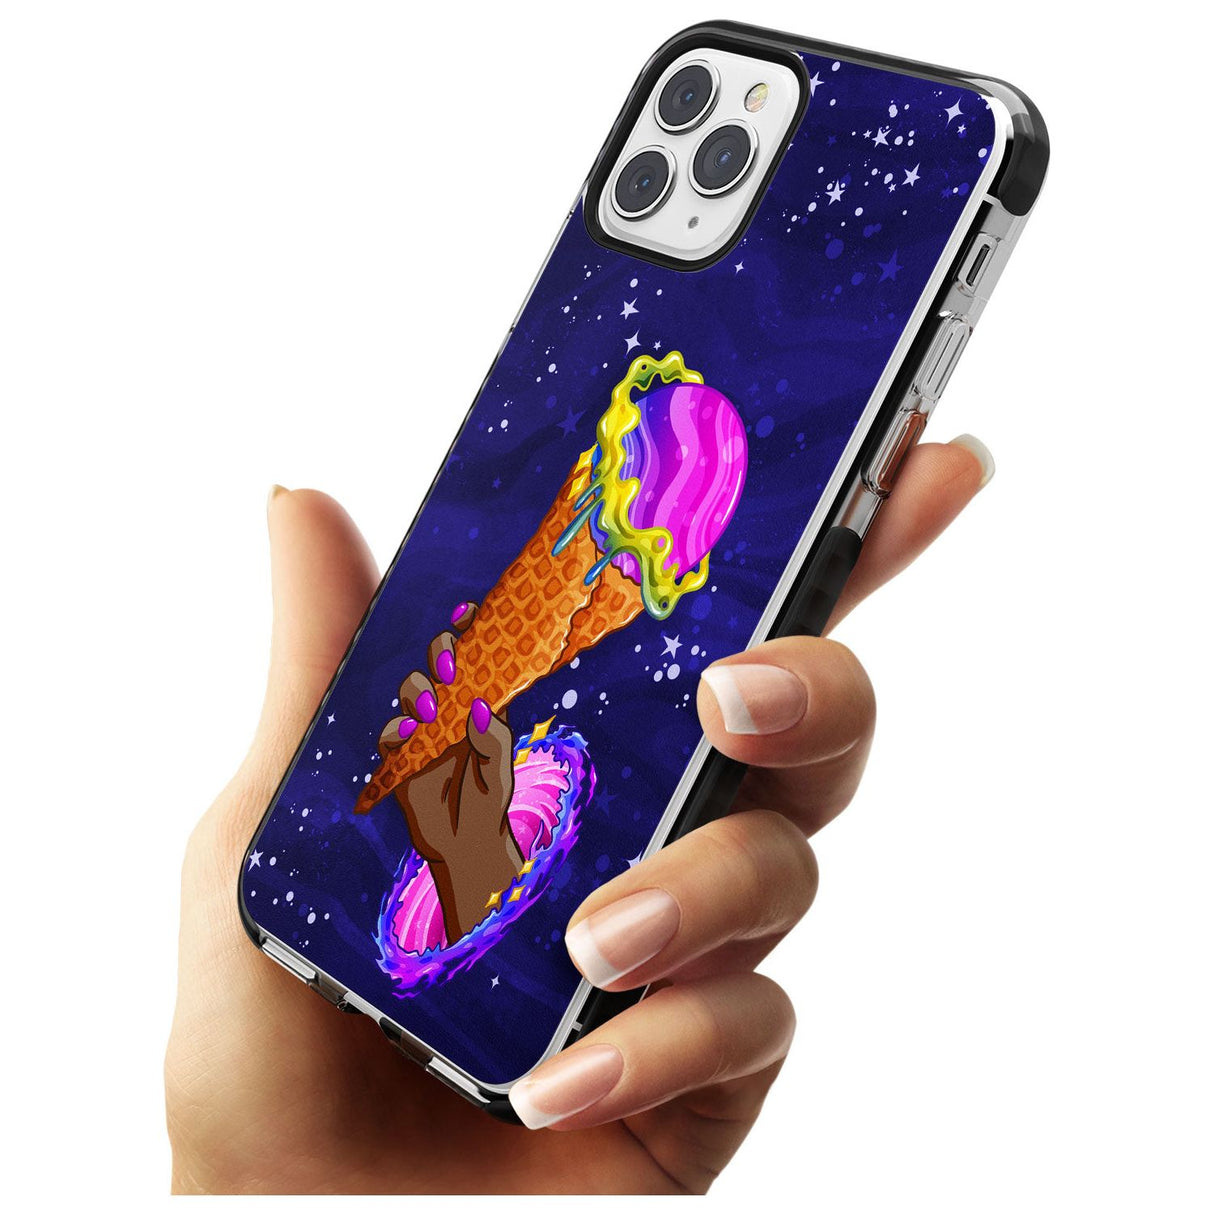 Interdimensional Ice Cream Black Impact Phone Case for iPhone 11